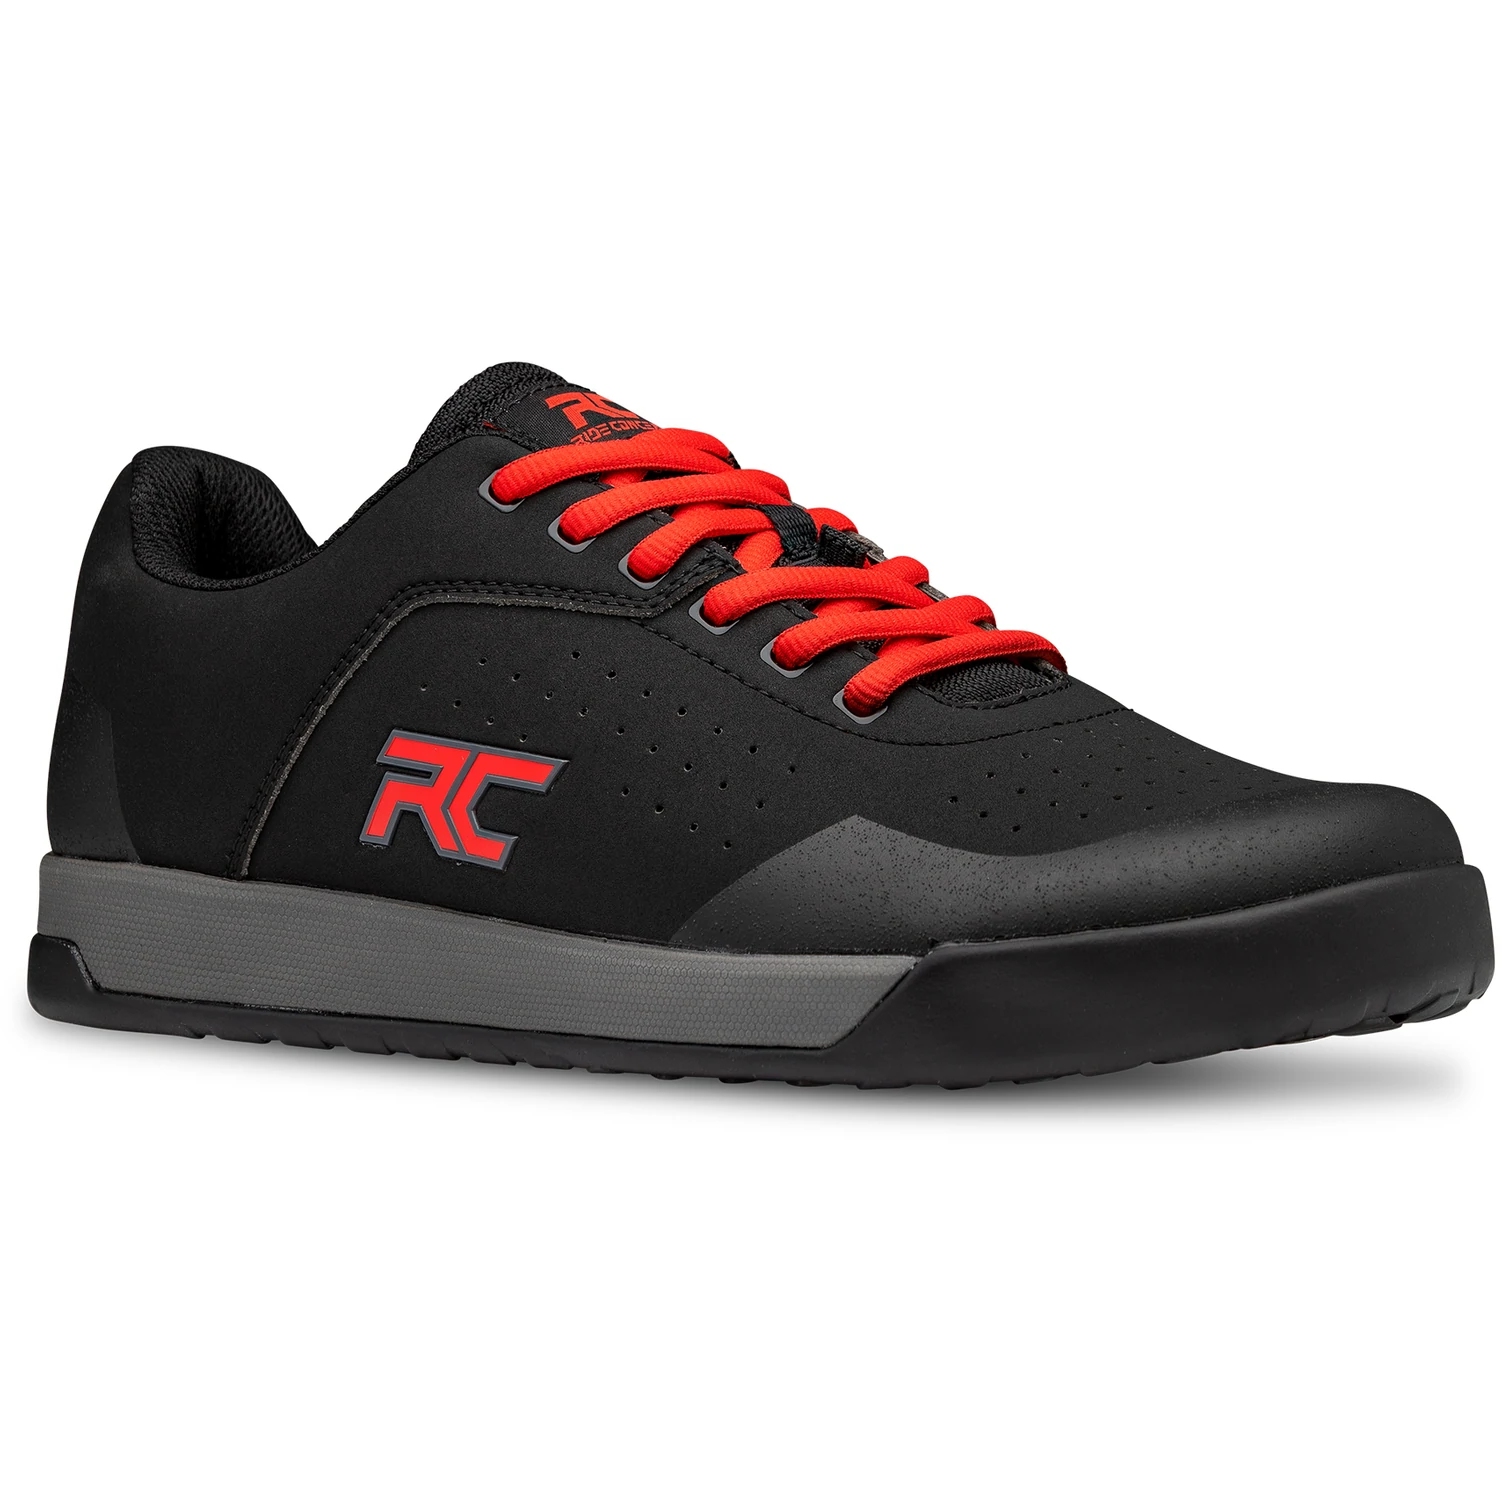 Productfoto van Ride Concepts Hellion Men&#039;s Shoe - Black/Red